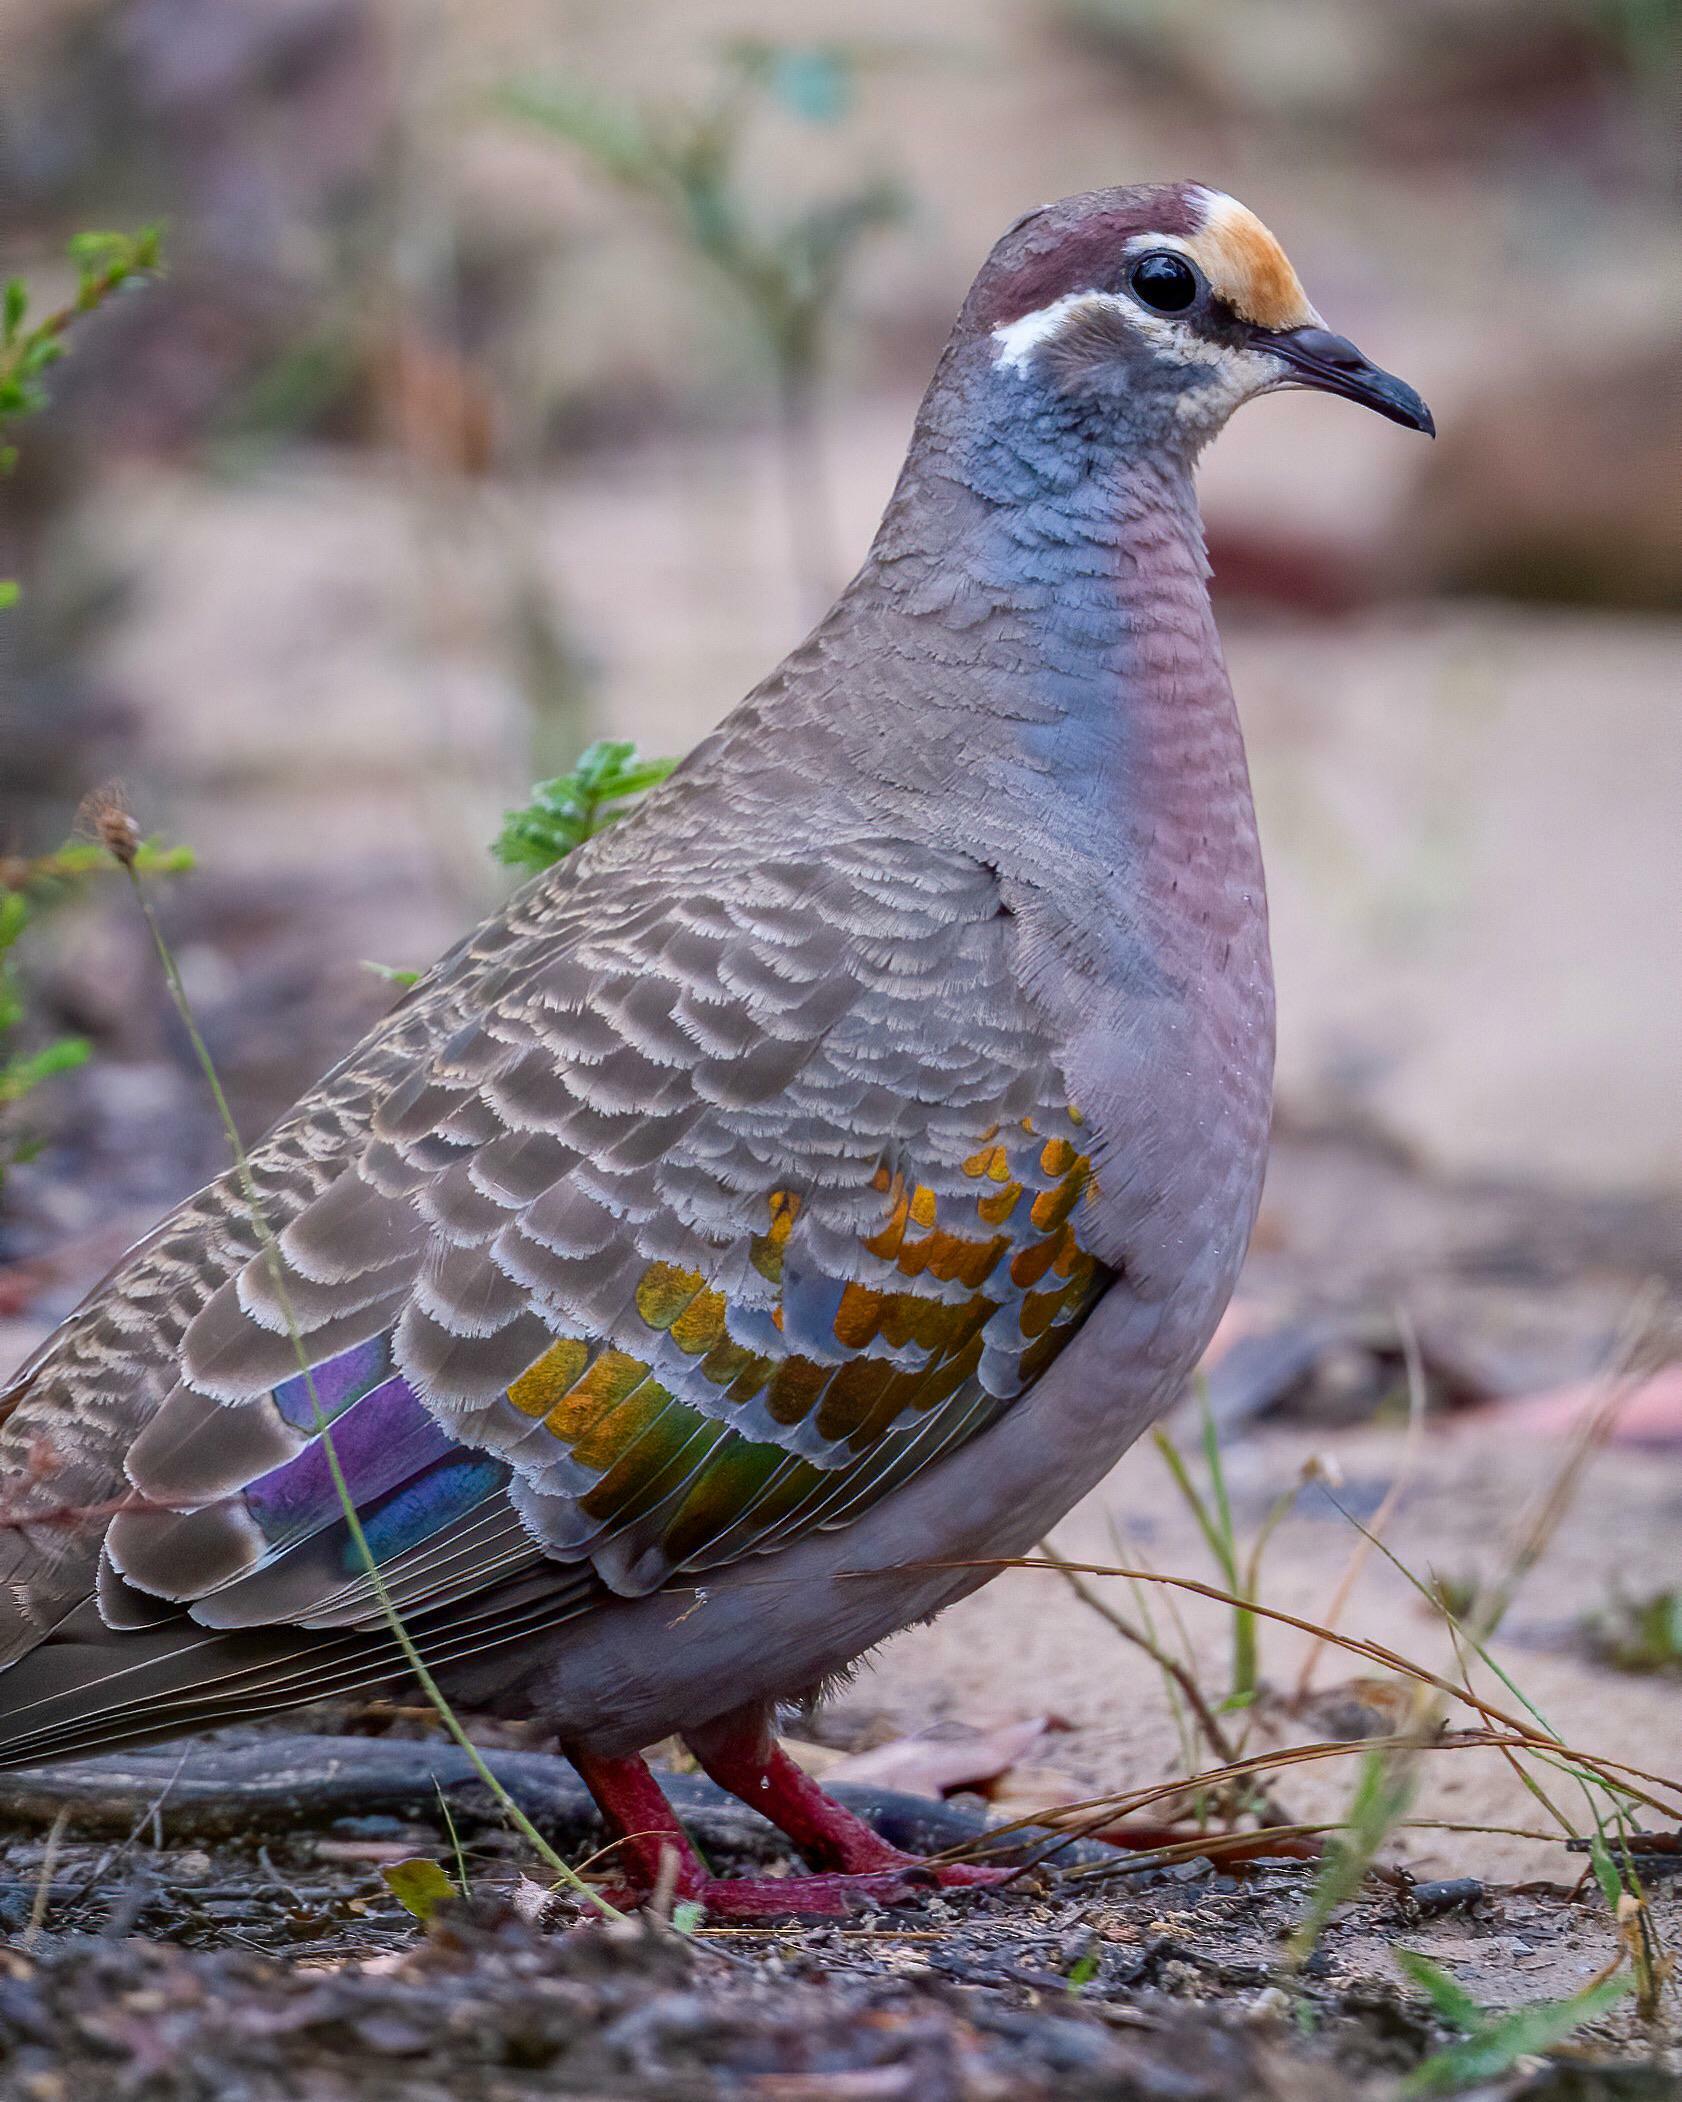 Savais-tu que nous avons des pigeons indigènes ? Voici un bronzé commun que j’ai photographié dans les montagnes bleues le week-end dernier (Australie).